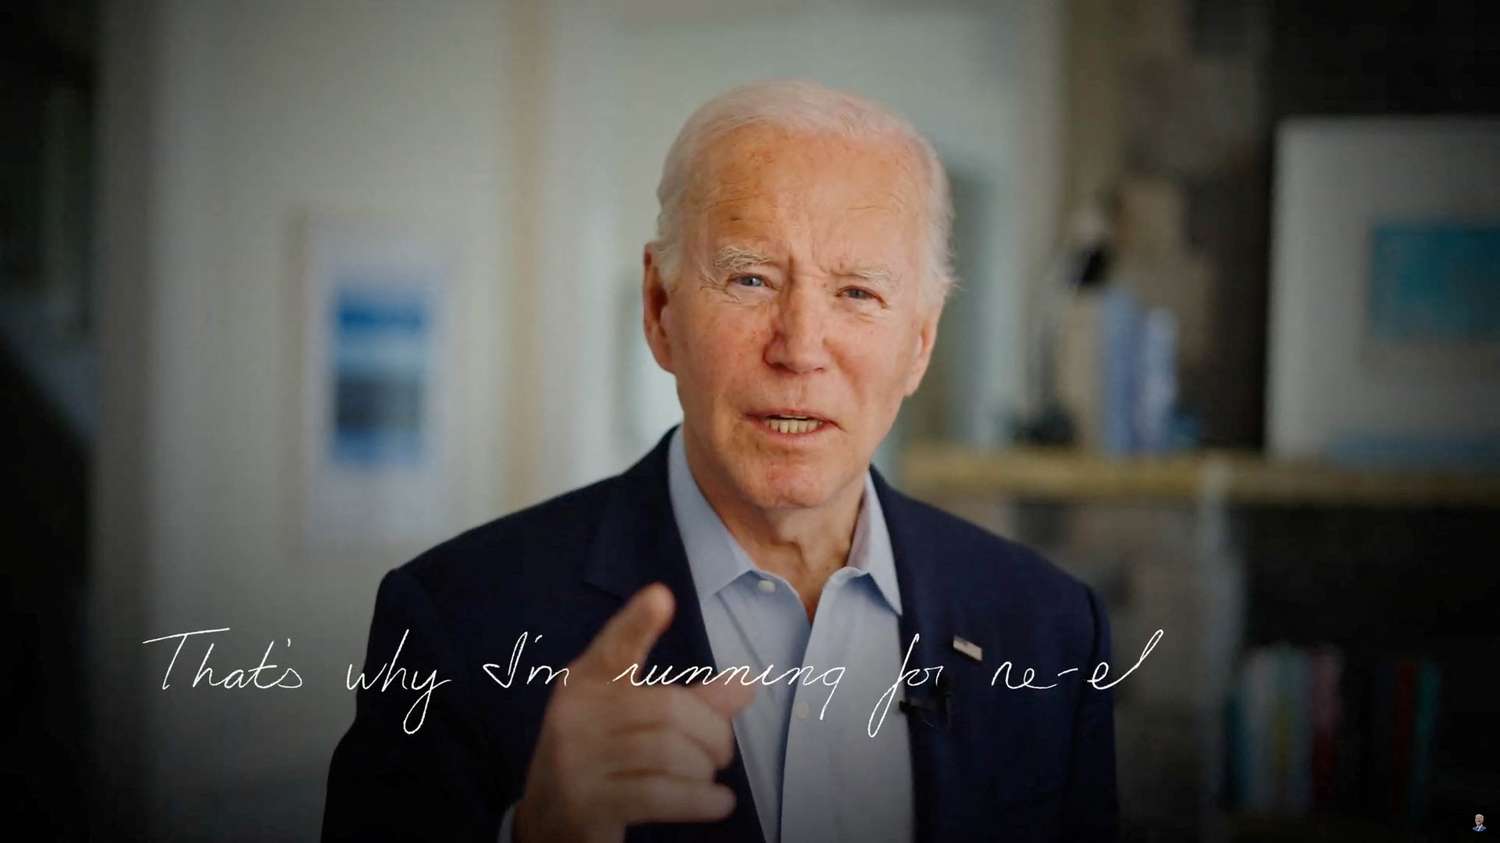 Biden anunció su candidatura a traes de un video en las redes sociales.